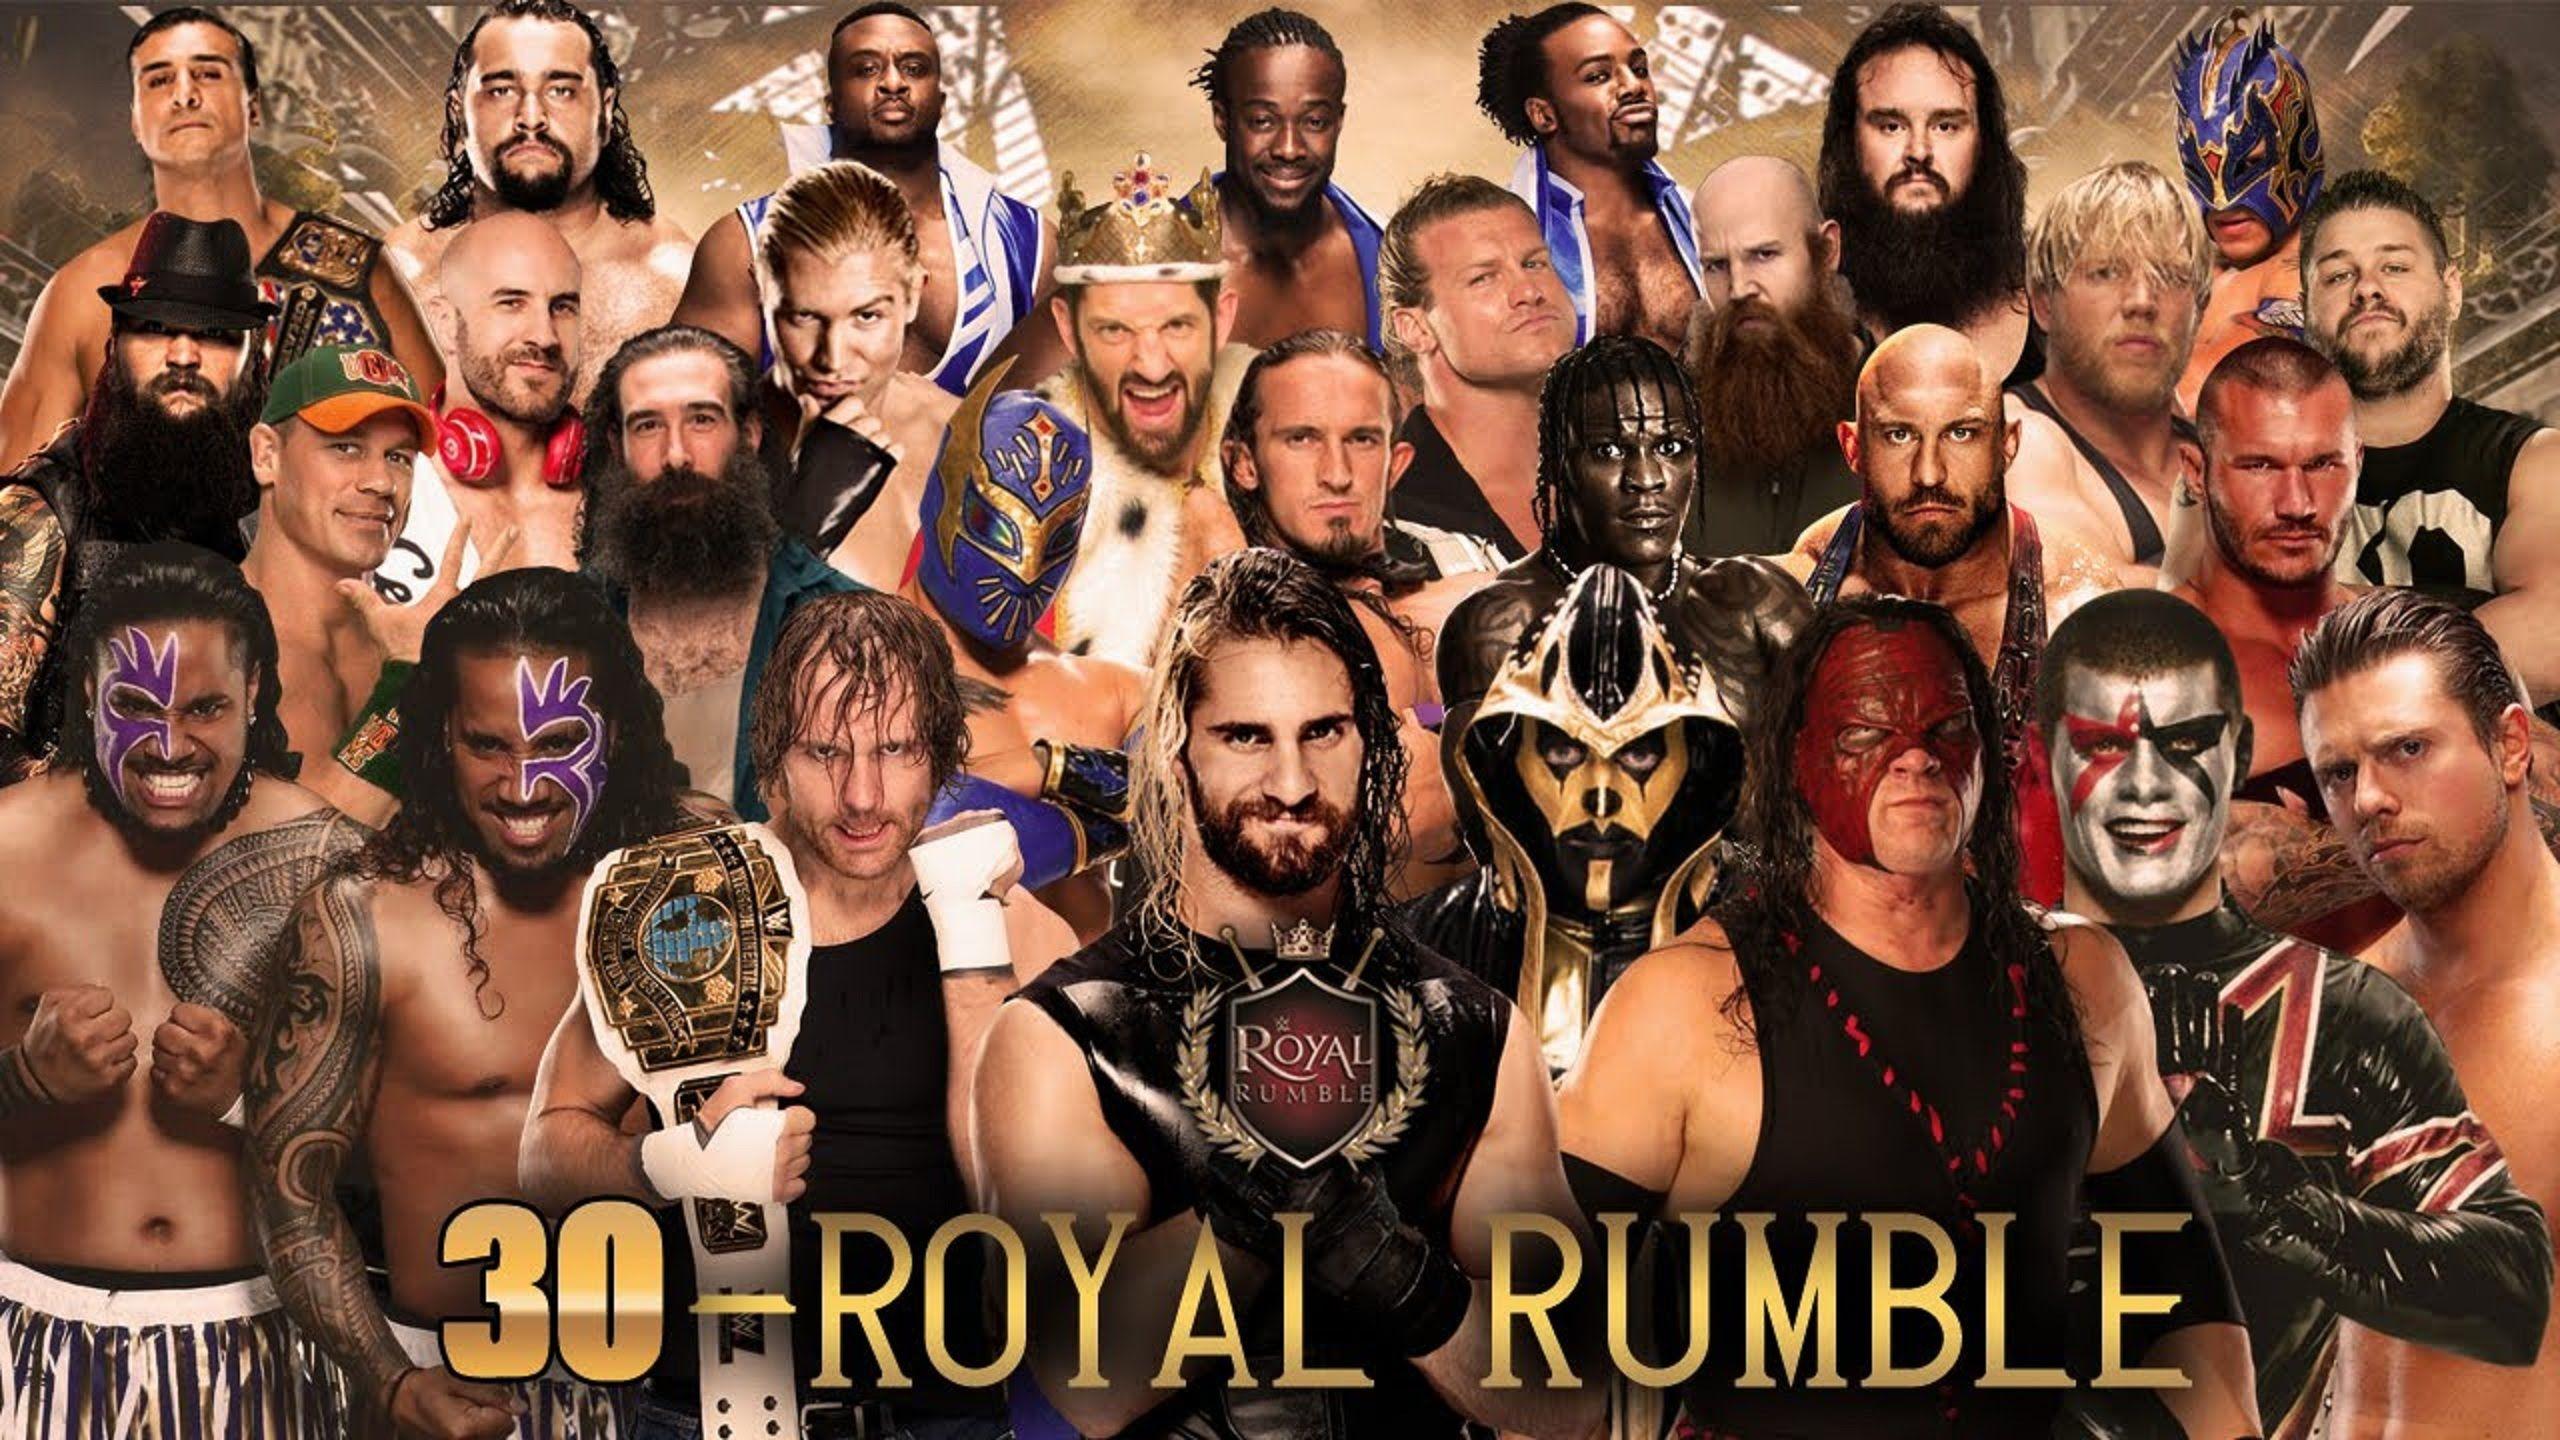 MAN ROYAL RUMBLE MATCH PREDICTION 2016 WWE ROYAL RUMBLE